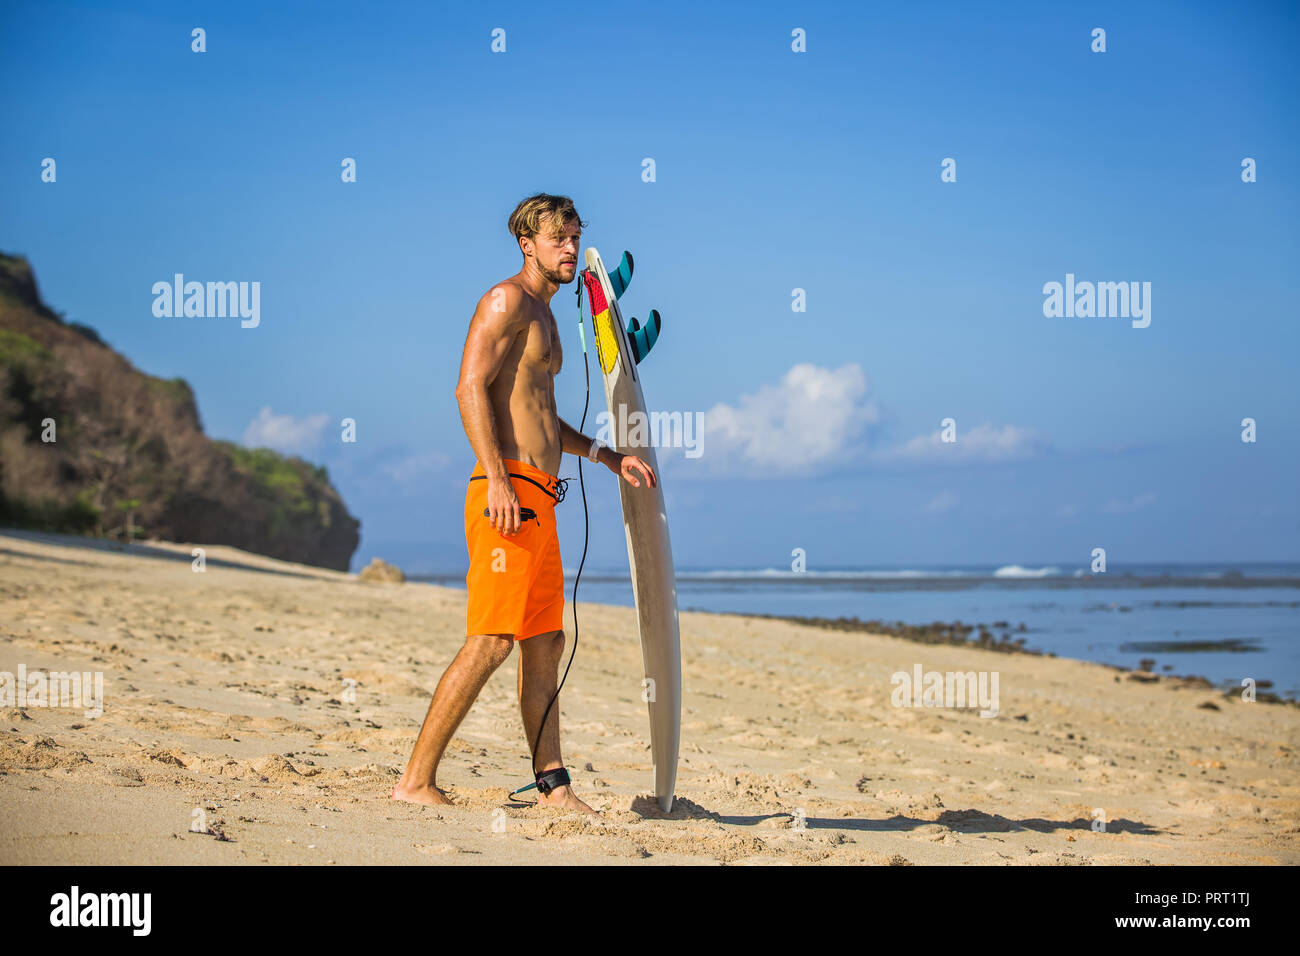 Seitenansicht des jungen Mannes mit Surfen am Sandstrand in der Nähe von Ocean Stockfoto